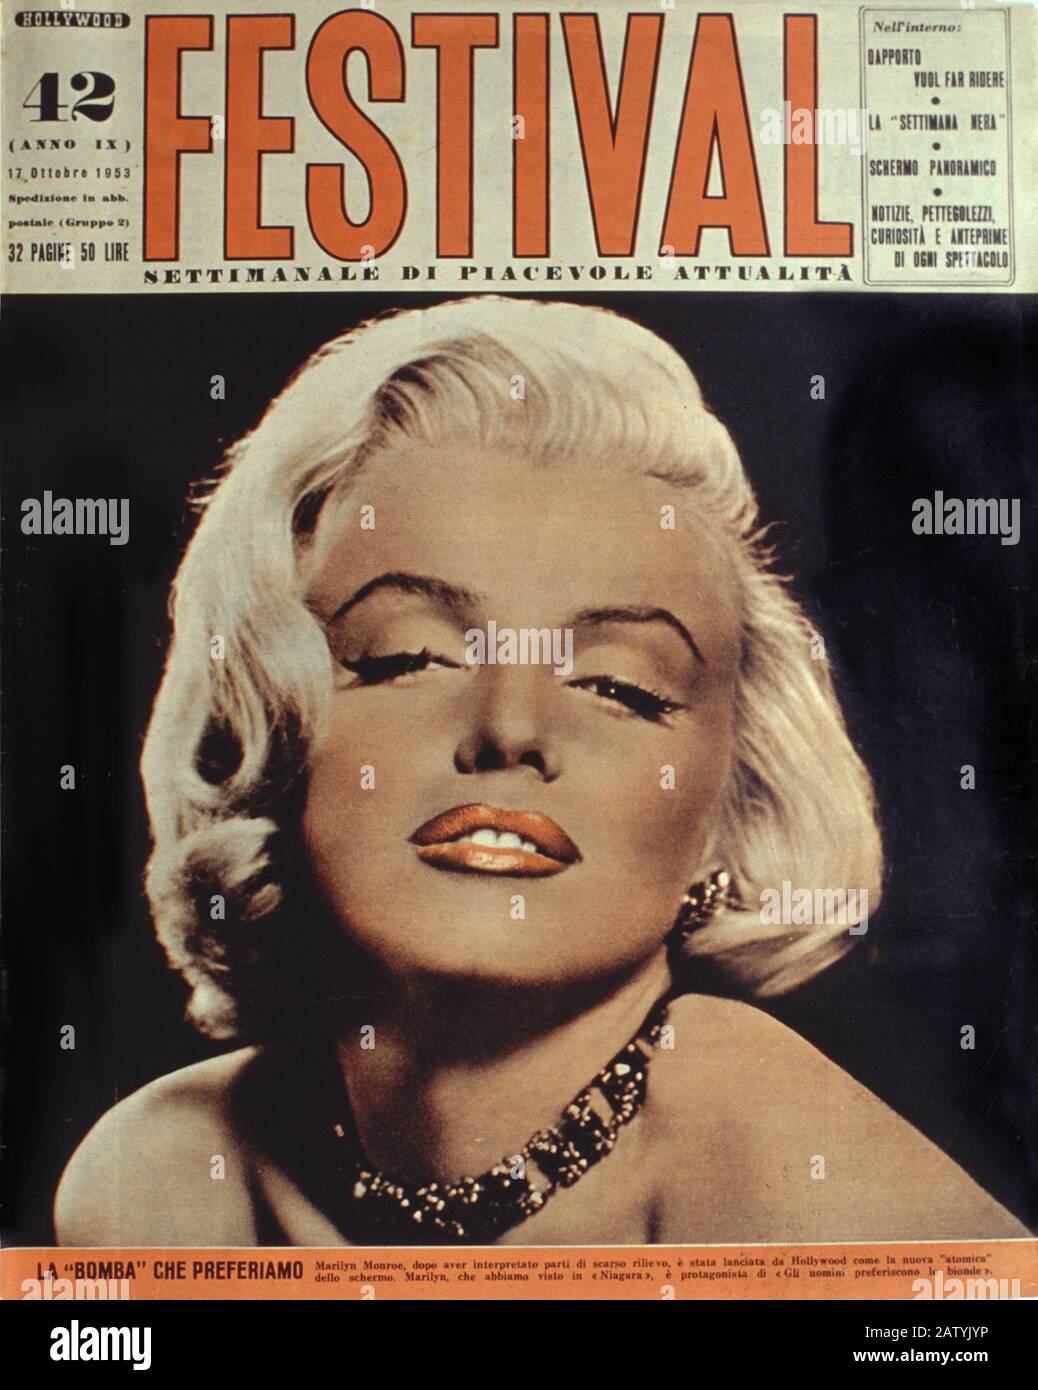 MARILYN MONROE , COME SPOSARE UN MILIONARIO ( 1953 - come mettere un miliario ) di Jean Negulesco , copertina della rivista ( FESTIVAL 17 ottobre 1953 - Foto Stock